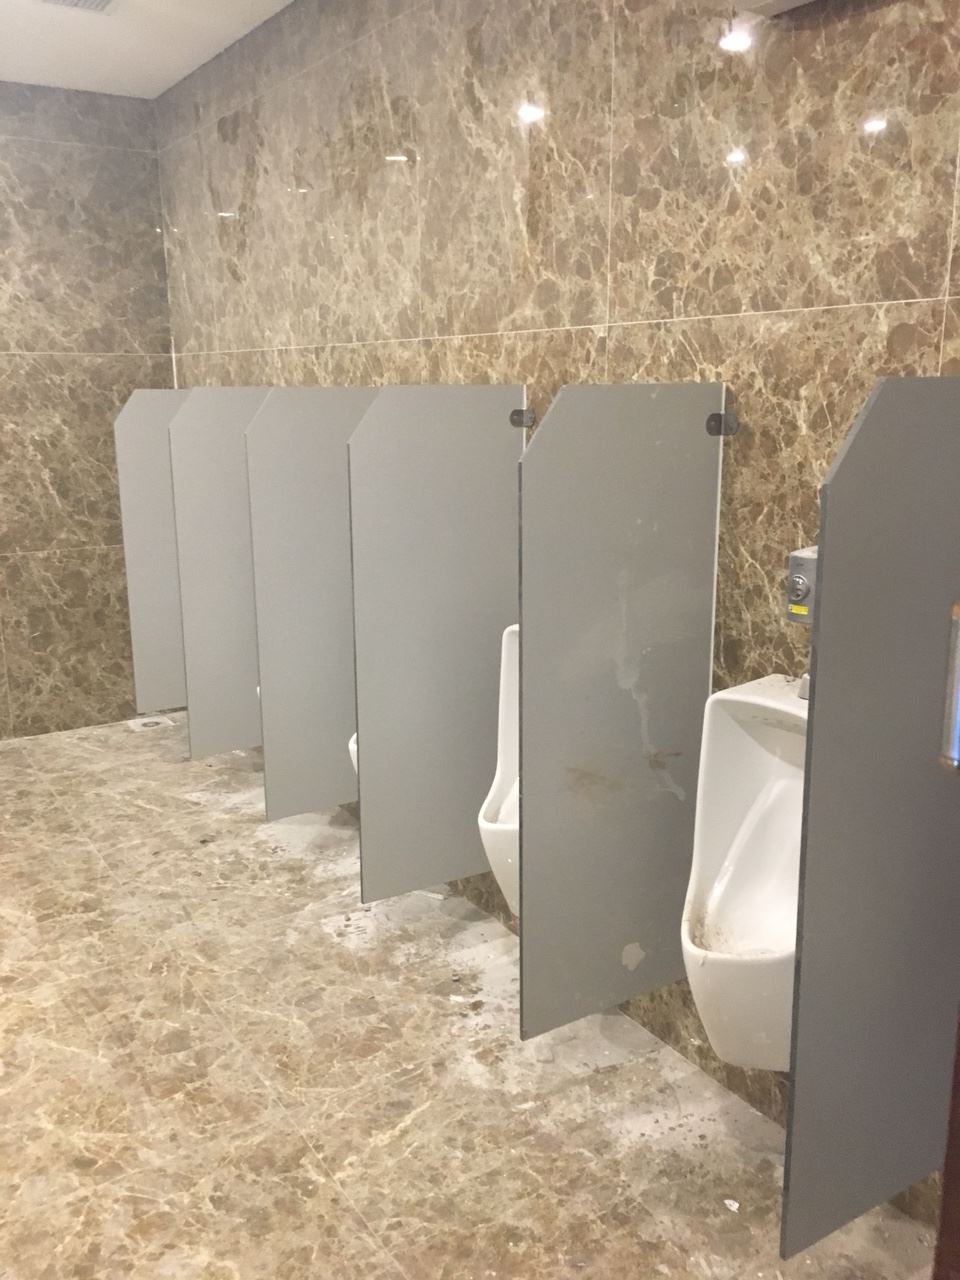 Lắp đặt vách ngăn vệ sinh cho phòng vệ sinh nam